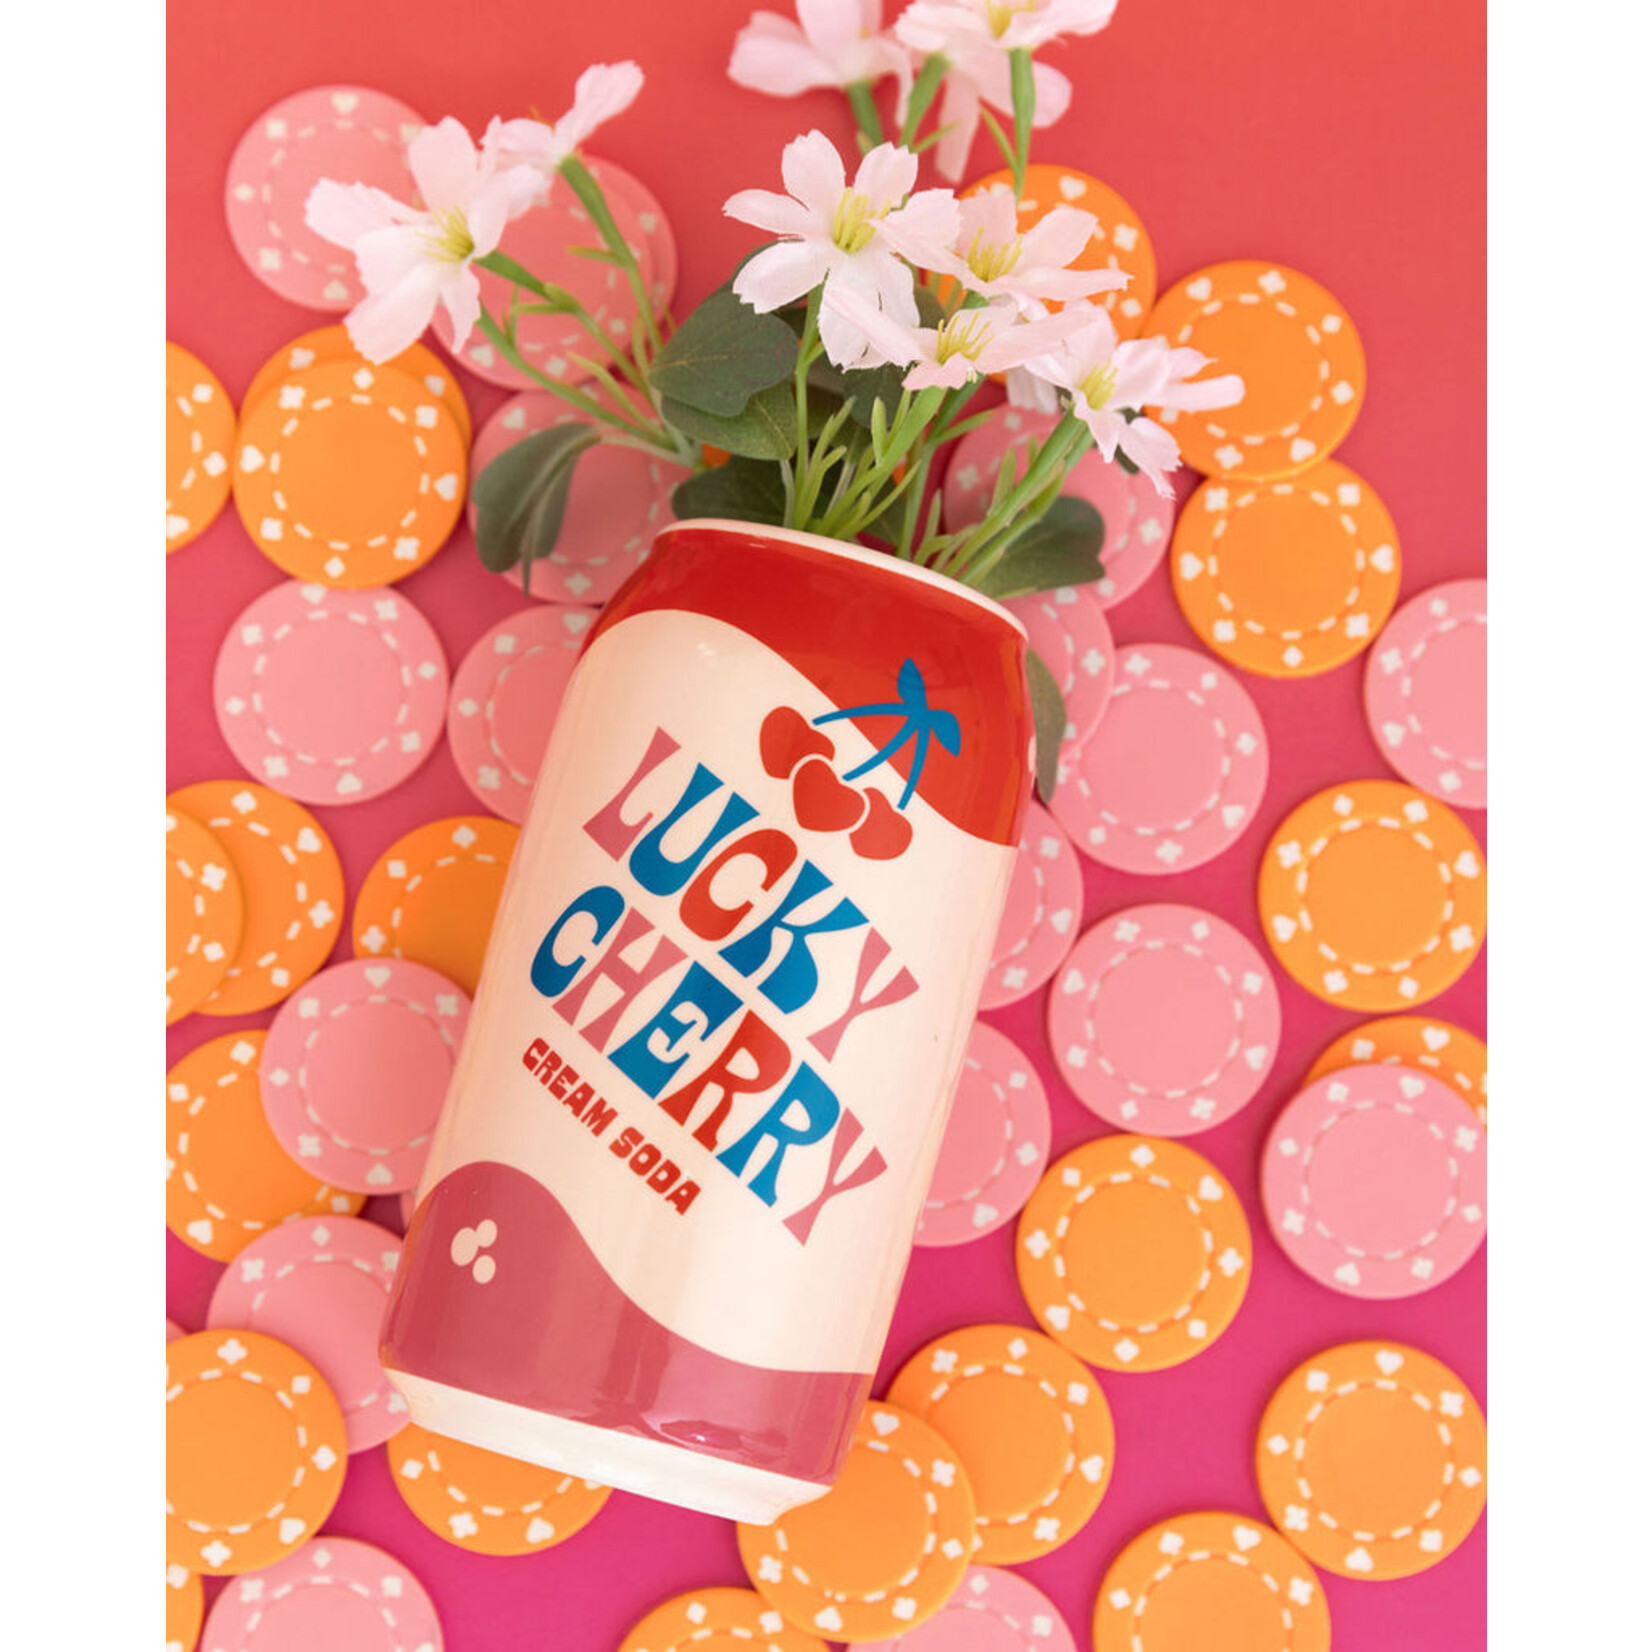 Ban.do Vase, Lucky Cherry Cream Soda